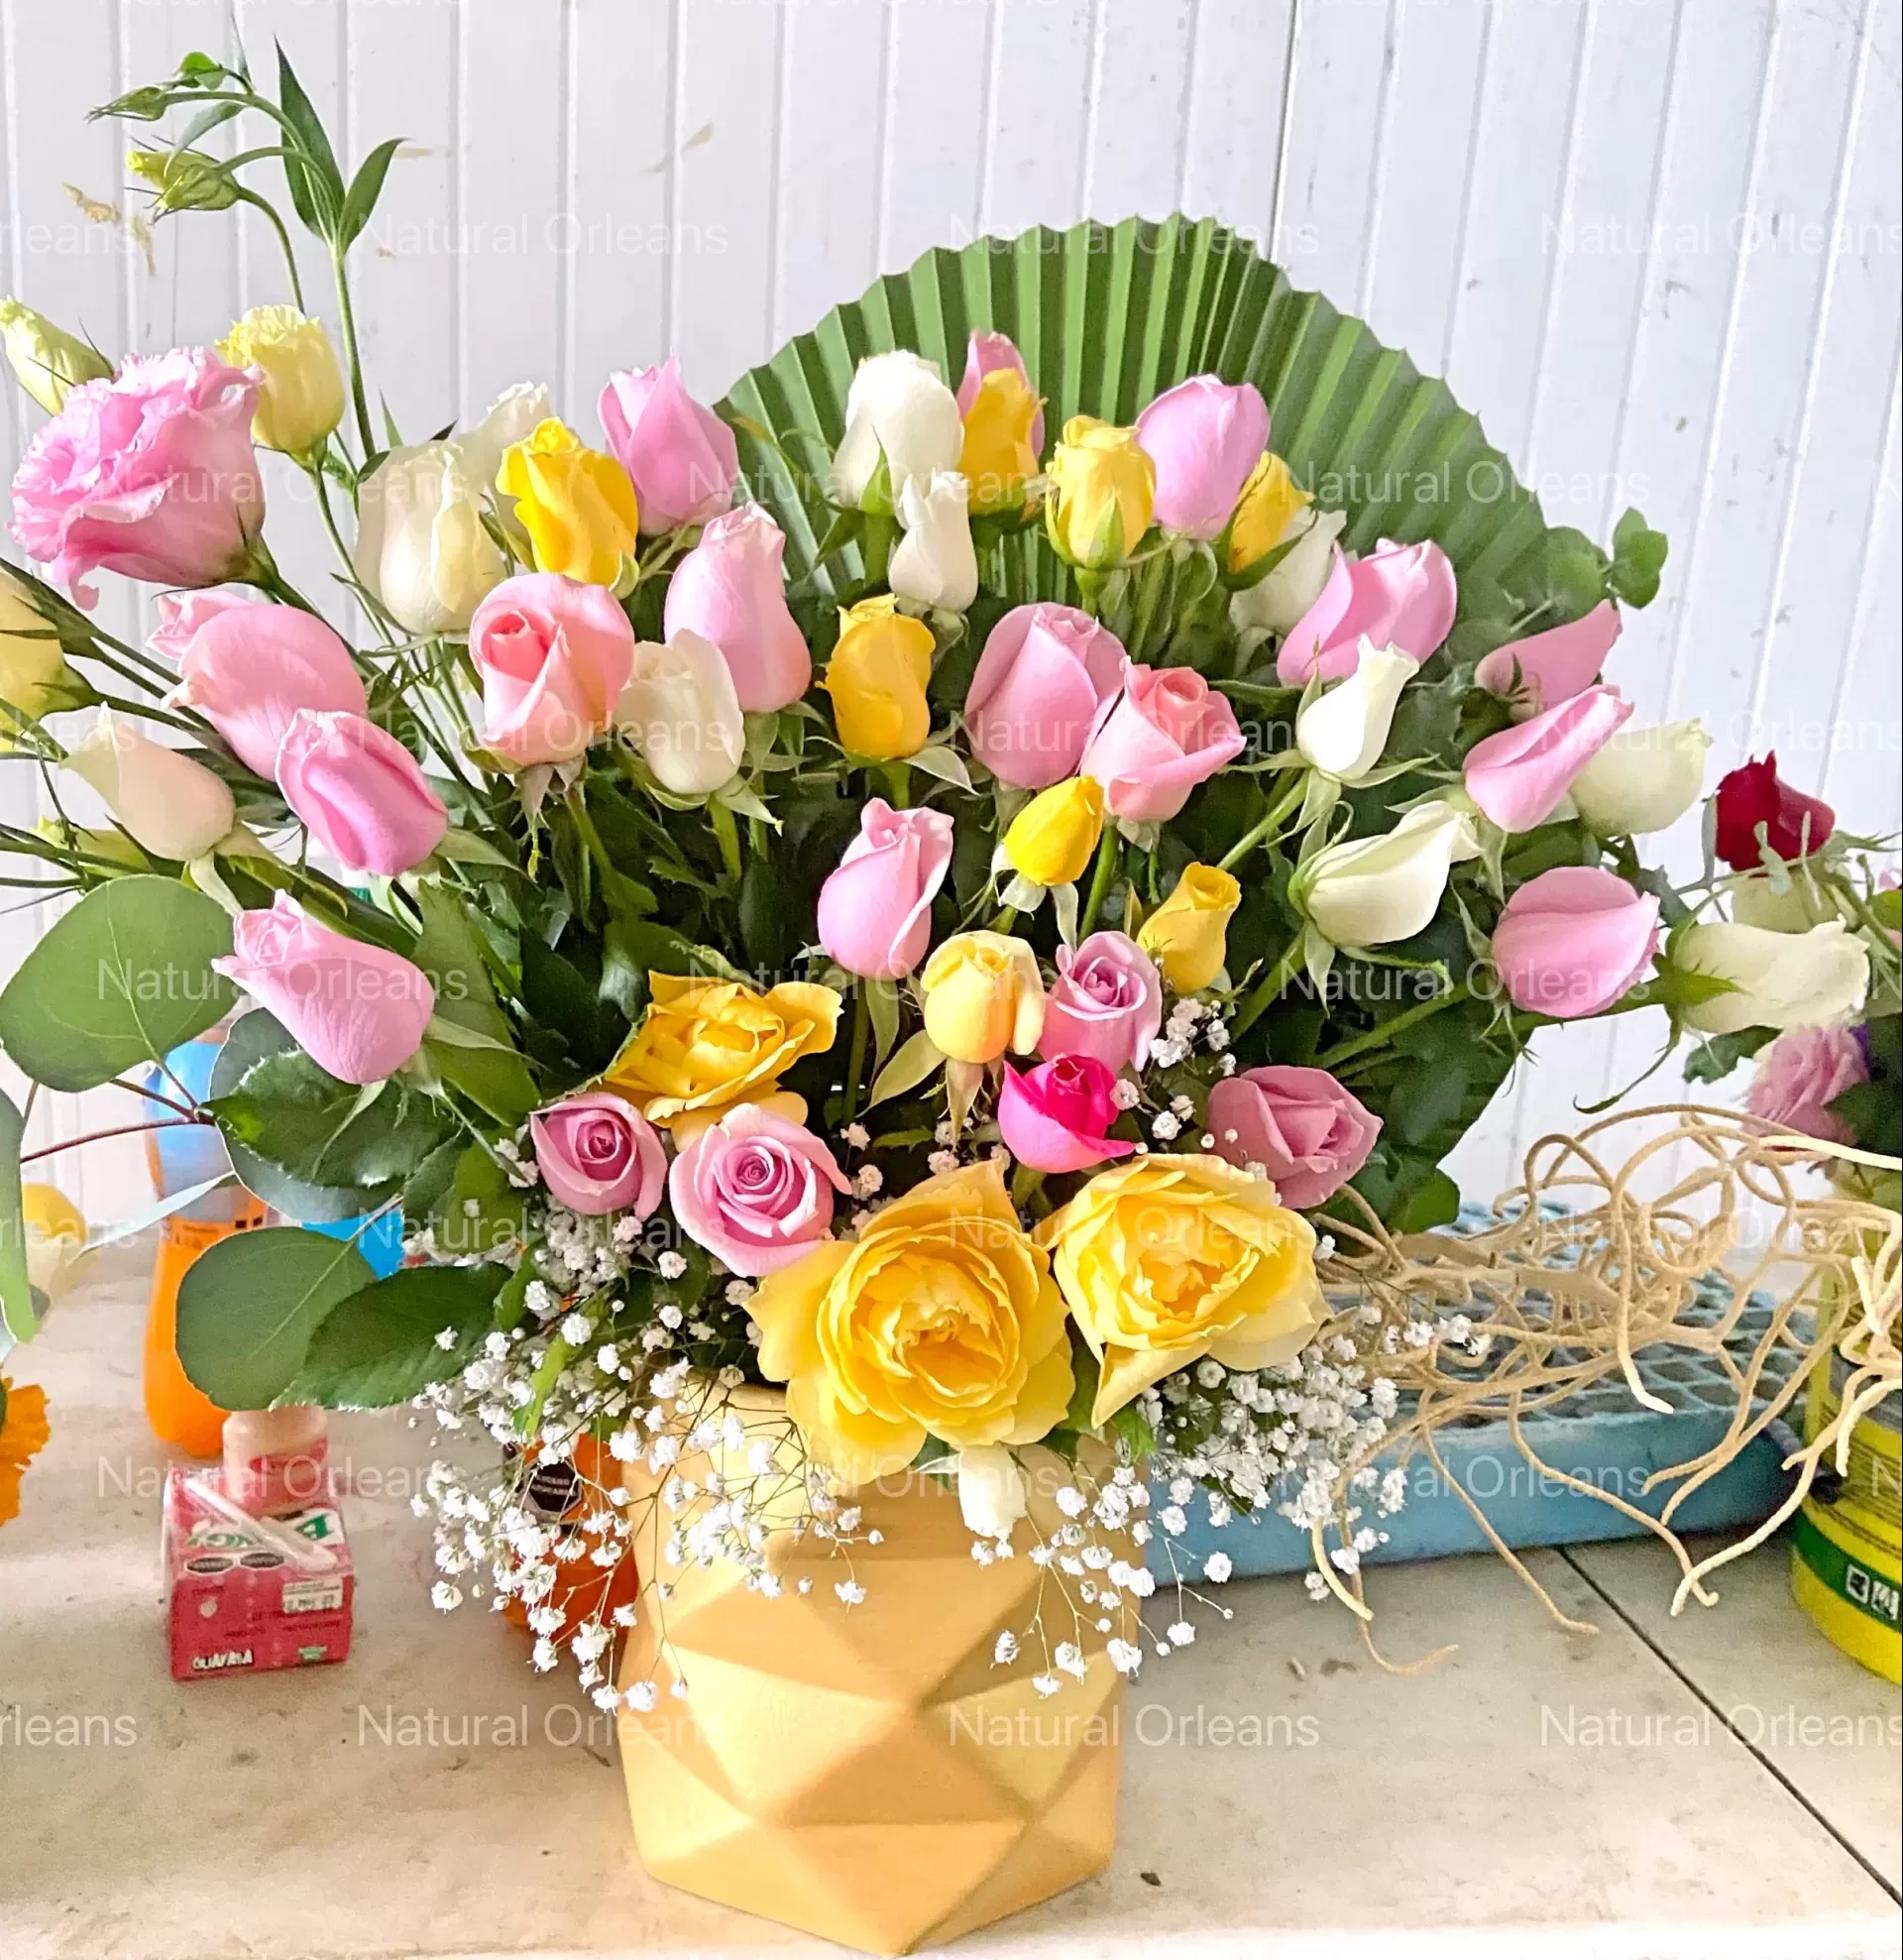 Bouquet con rosas y flores